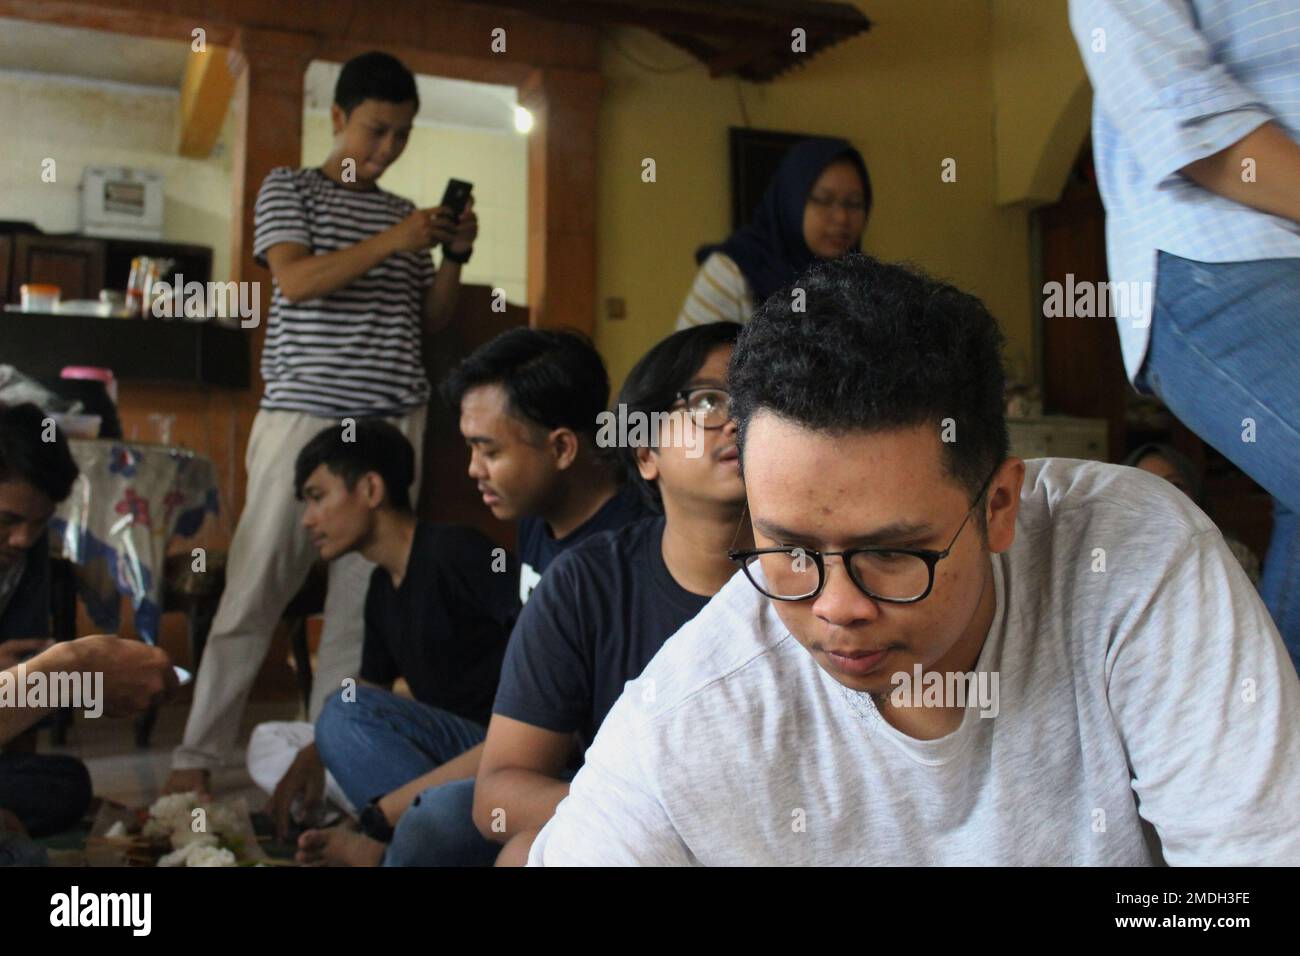 Jakarta, Indonesien - 02 24 2020: Junge Menschen, die sich während der Collegeferien versammeln Stockfoto